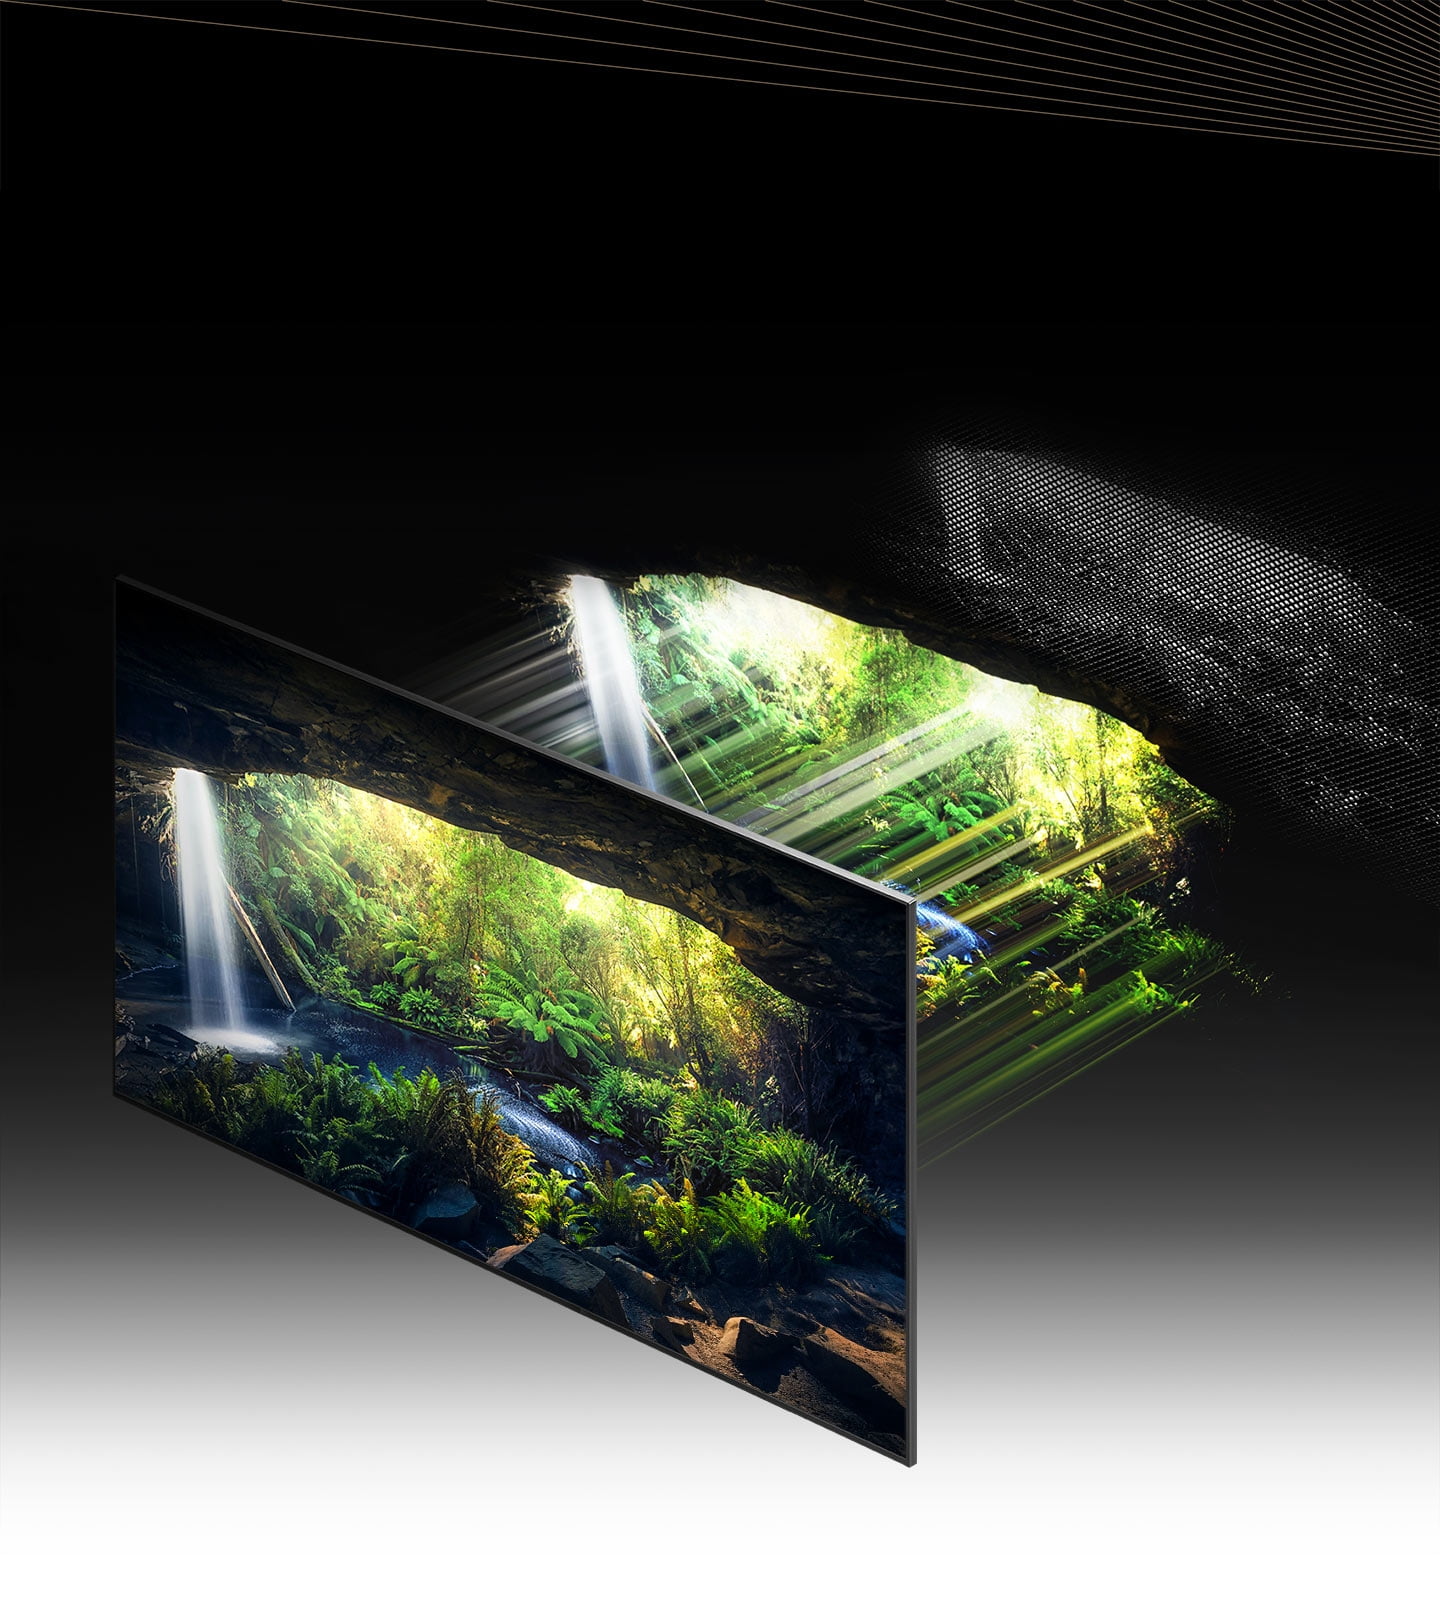 Technologia Quantum Mini Led w nowym telewizorze Samsung Neo QLED QN900A zachwyci Cię wyrazistymi detalami i barwami.